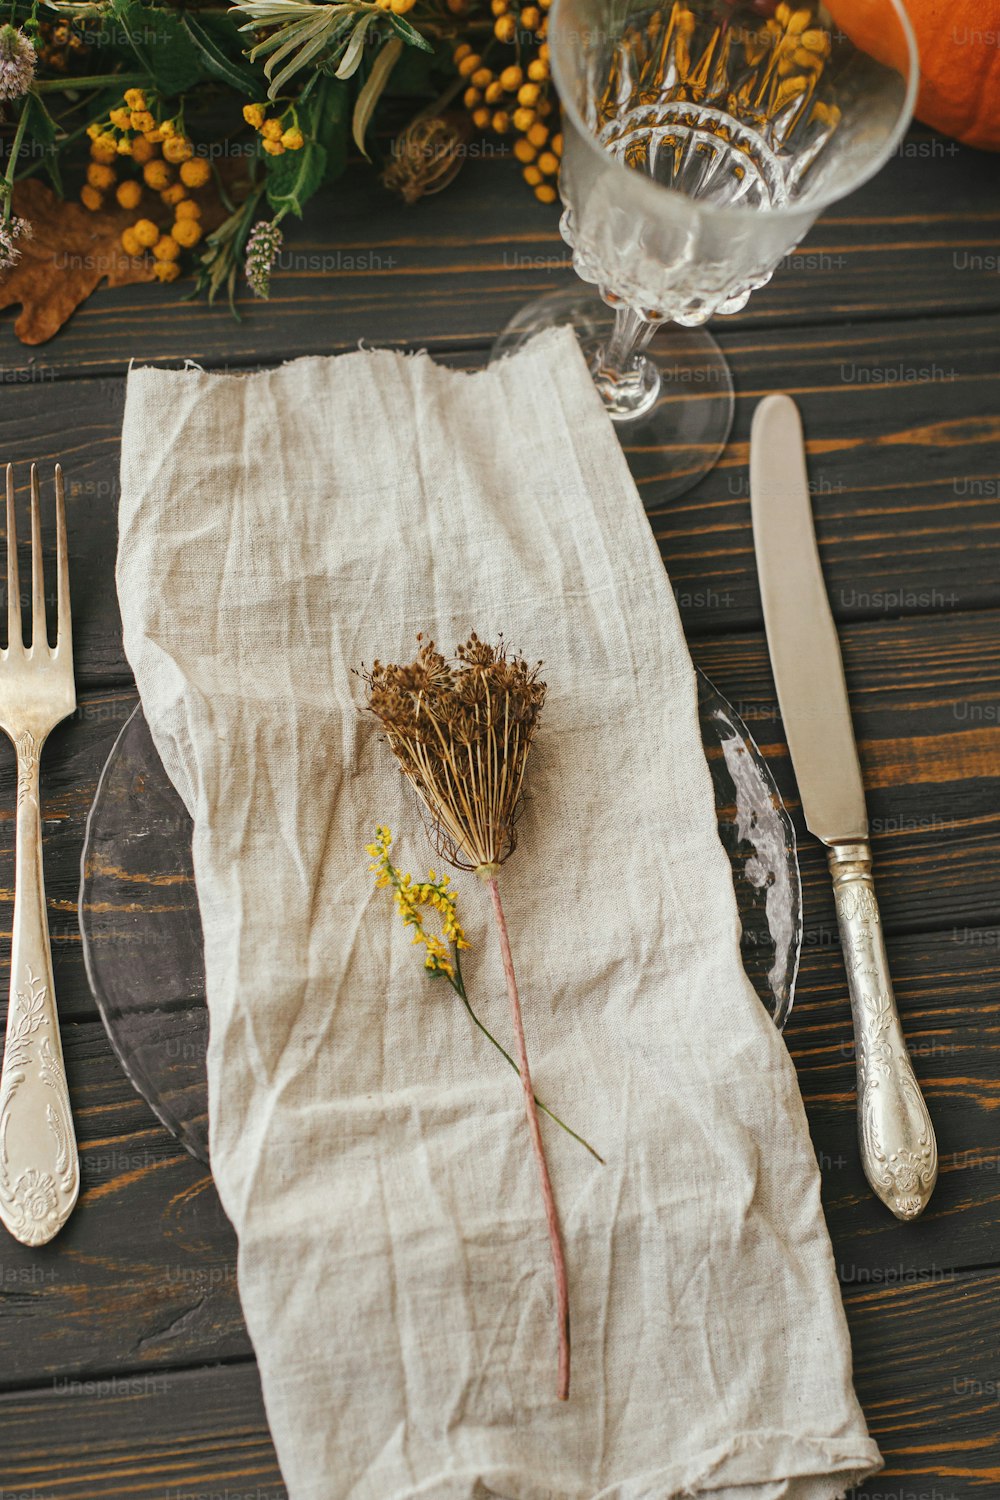 빈티지 칼 붙이, 린넨 냅킨, 호박과 가을 꽃꽂이가있는 나무 테이블에 허브가있는 현대적인 접시. 농가 소박한 가을 결혼식. 친환경 추수 감사절 저녁 식사 테이블 설정